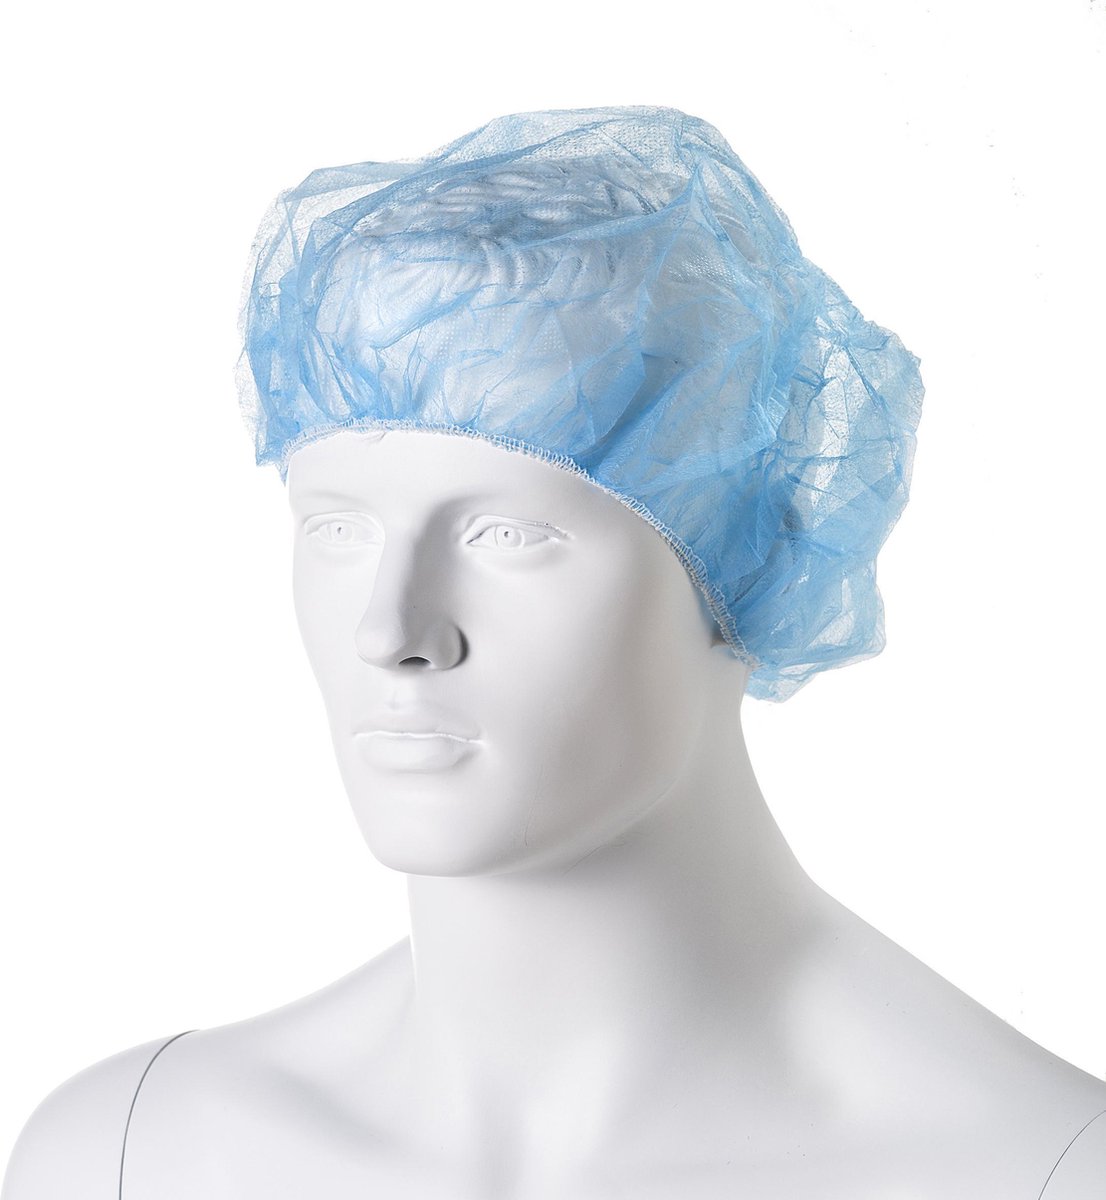 Haarnetjes - baret model - bescherming voor haren - wegwerp - 100 stuks pp non woven - Shield